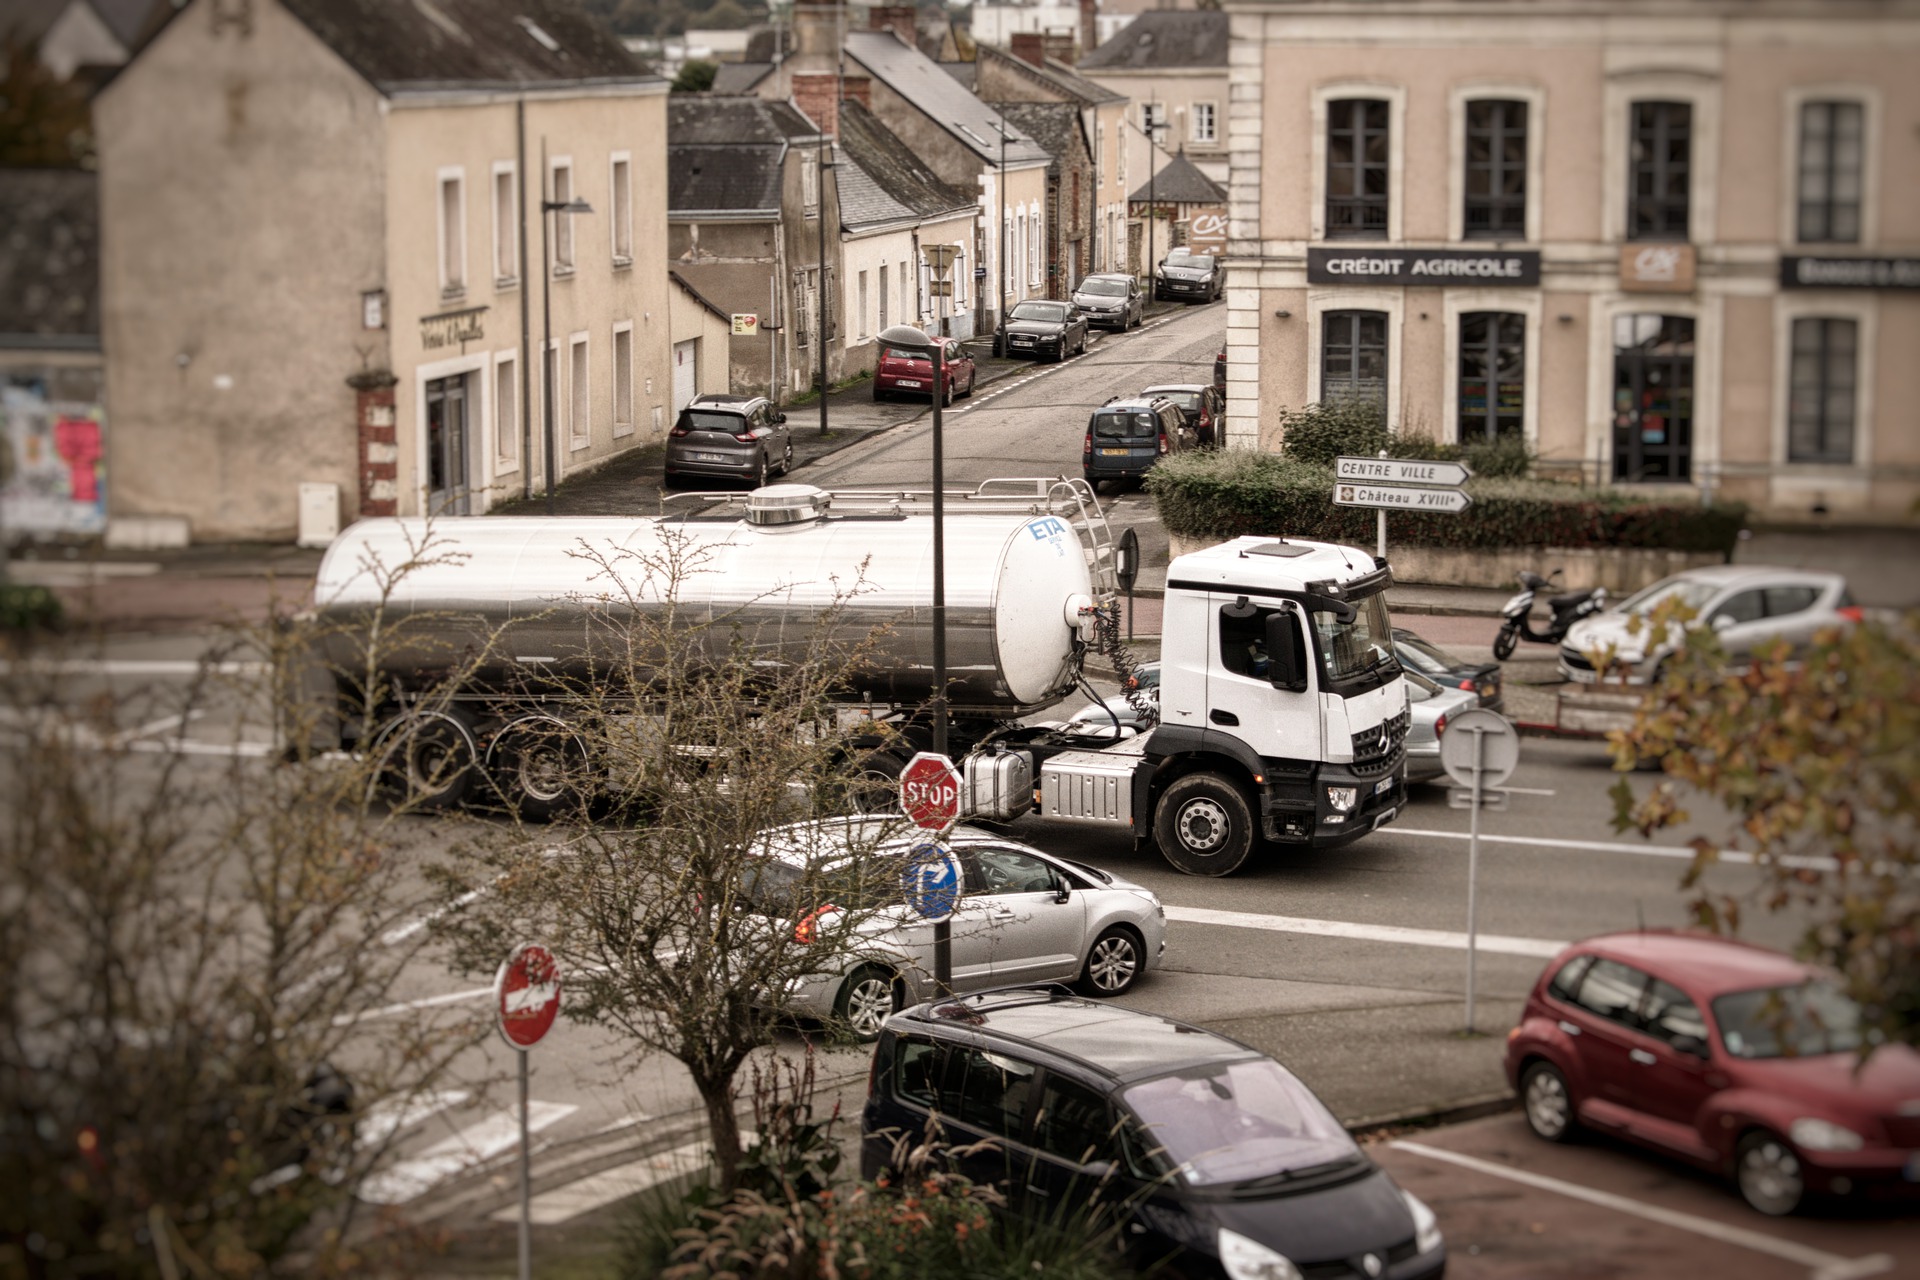 Moeten zware vrachtwagens überhaupt toegang krijgen tot het centrum van de stad?